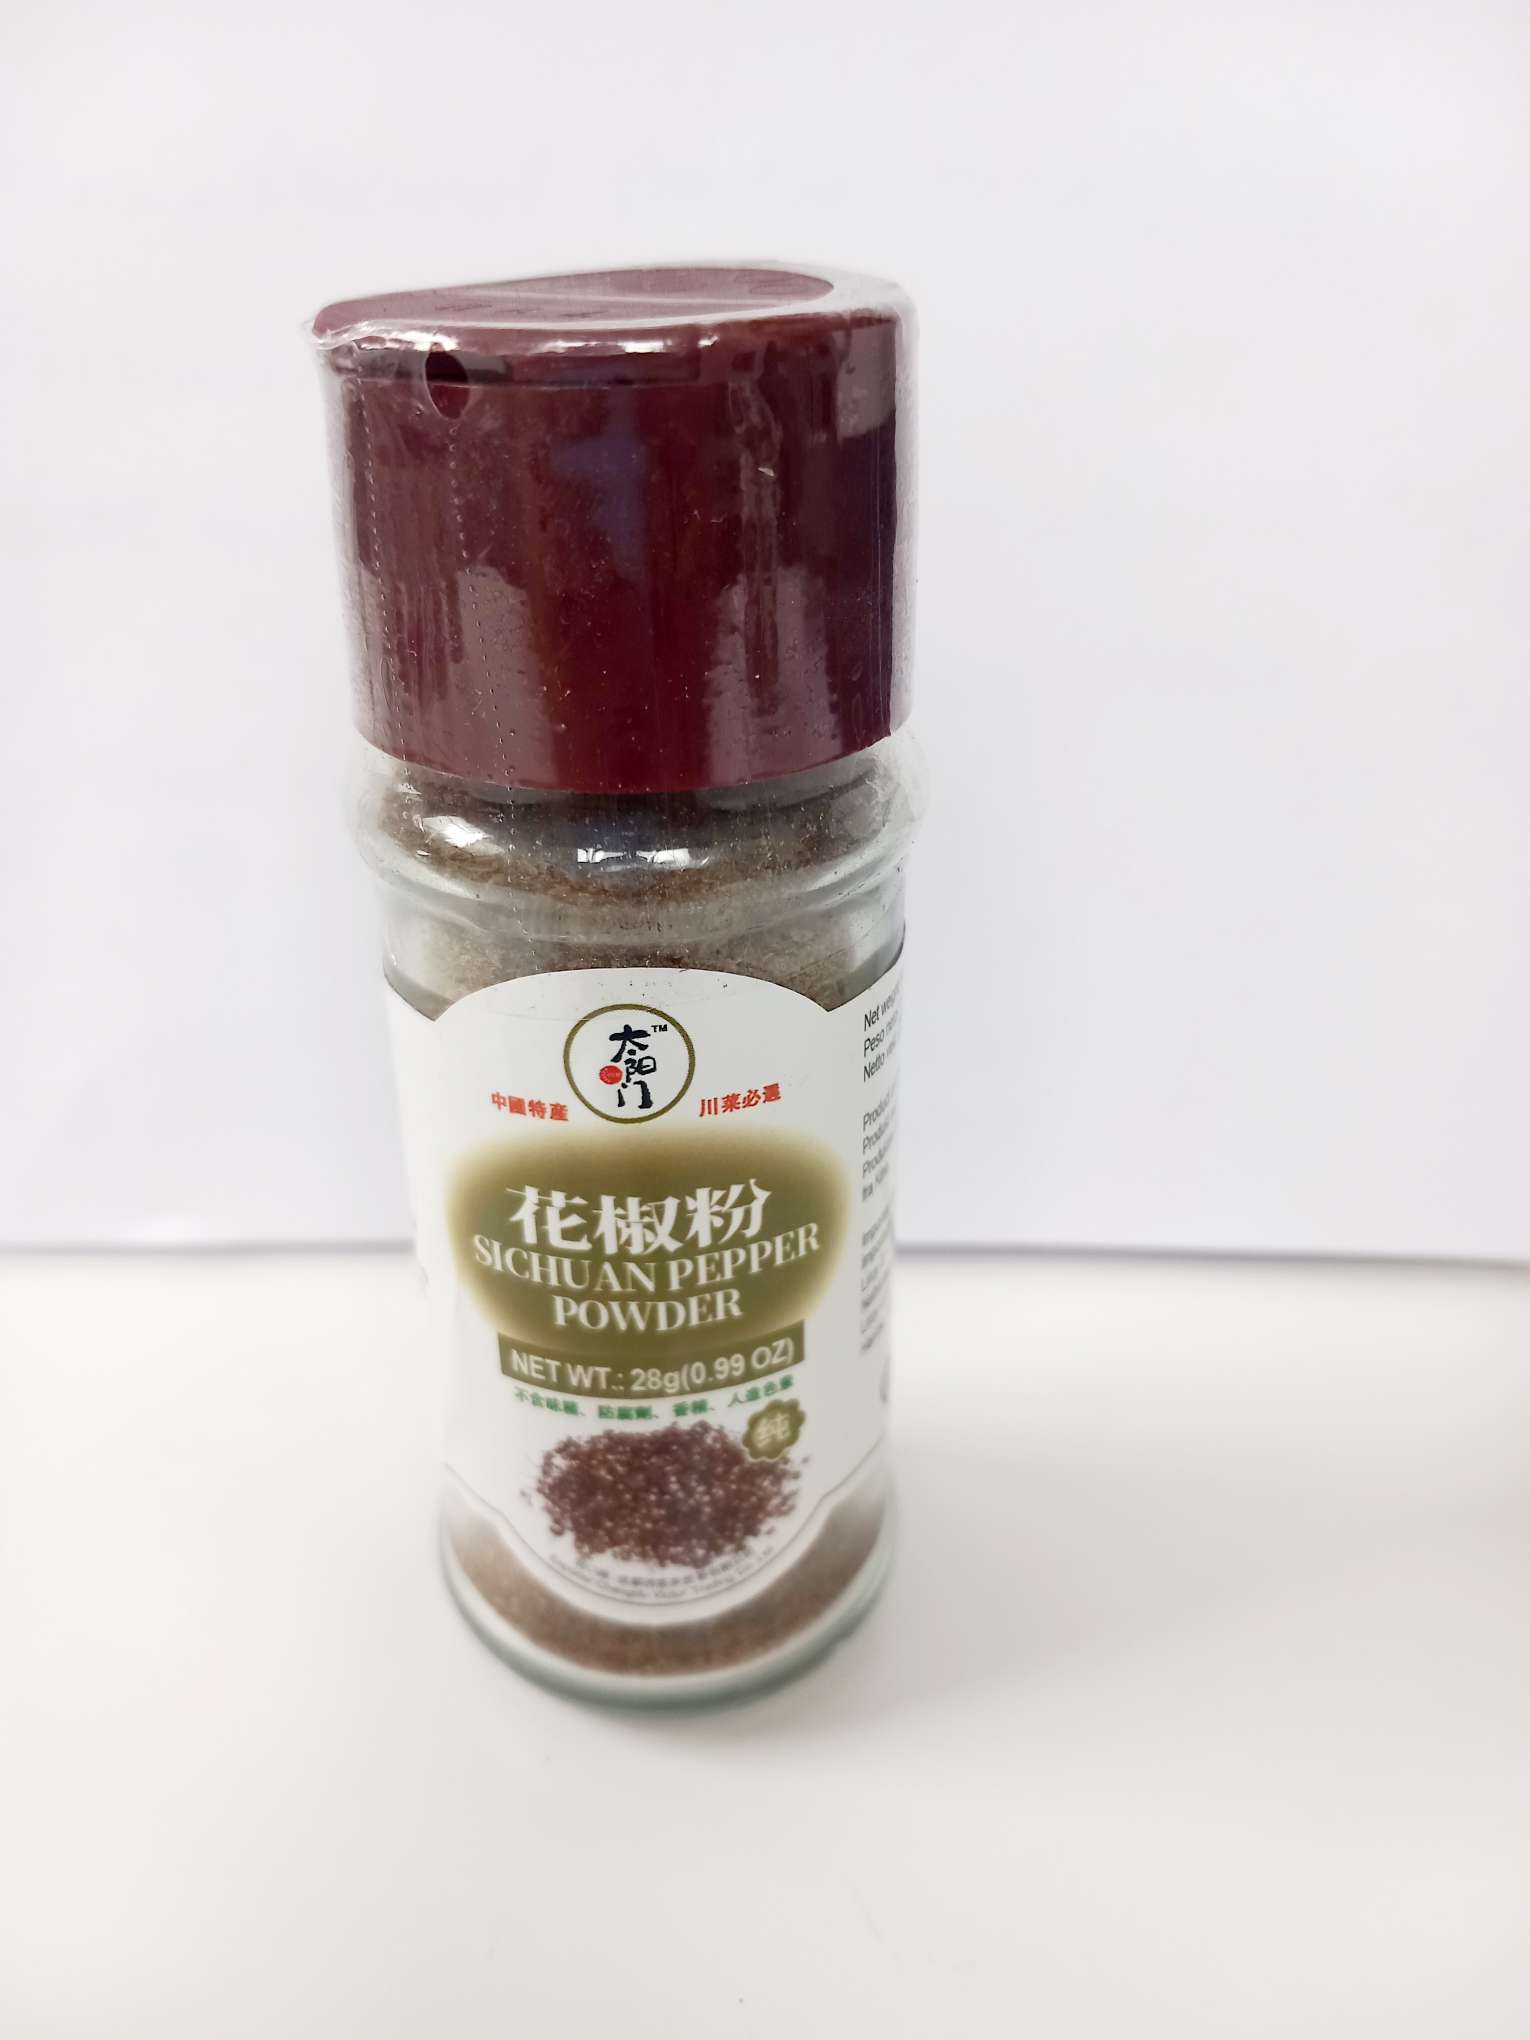 TYM Sichuan Pepper Powder 28g jar